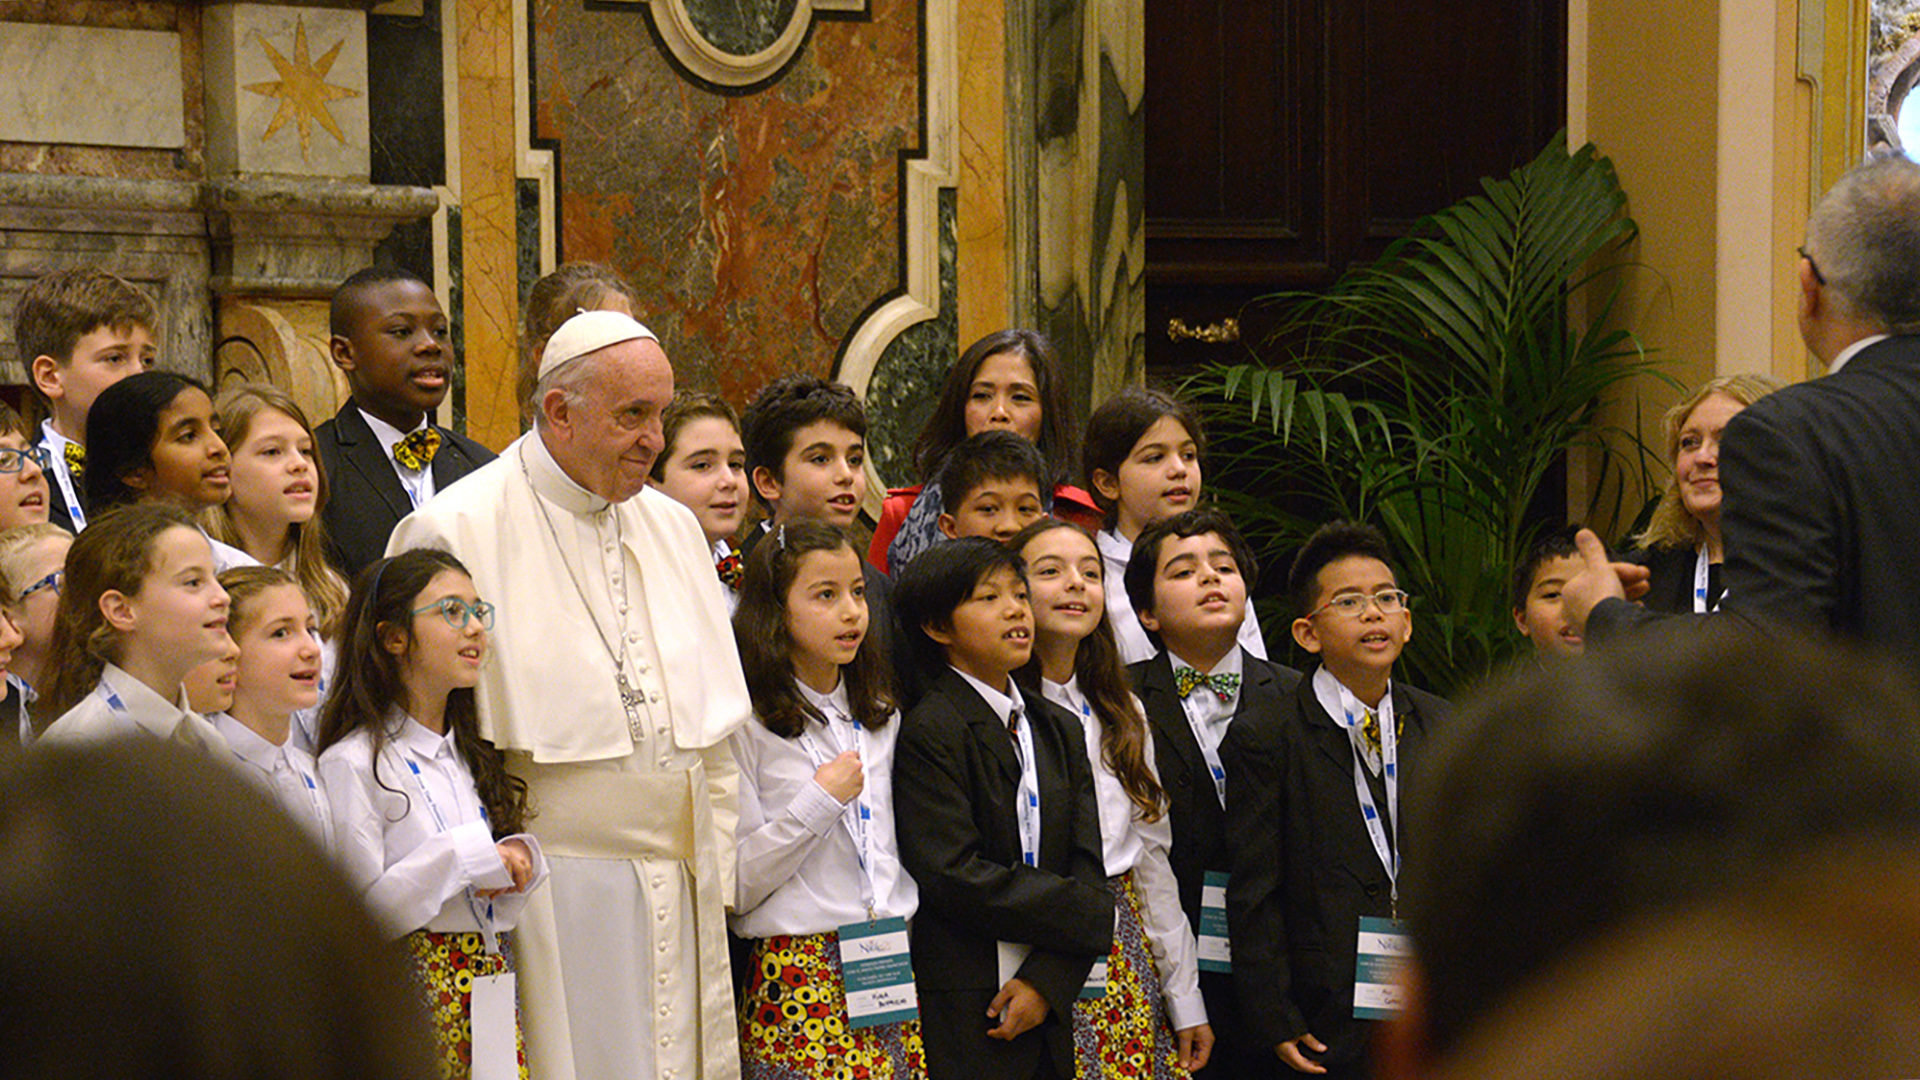 Le pape a rencontré les artiste du dernier "concert de Noël" au Vatican | © infoans.org / DR